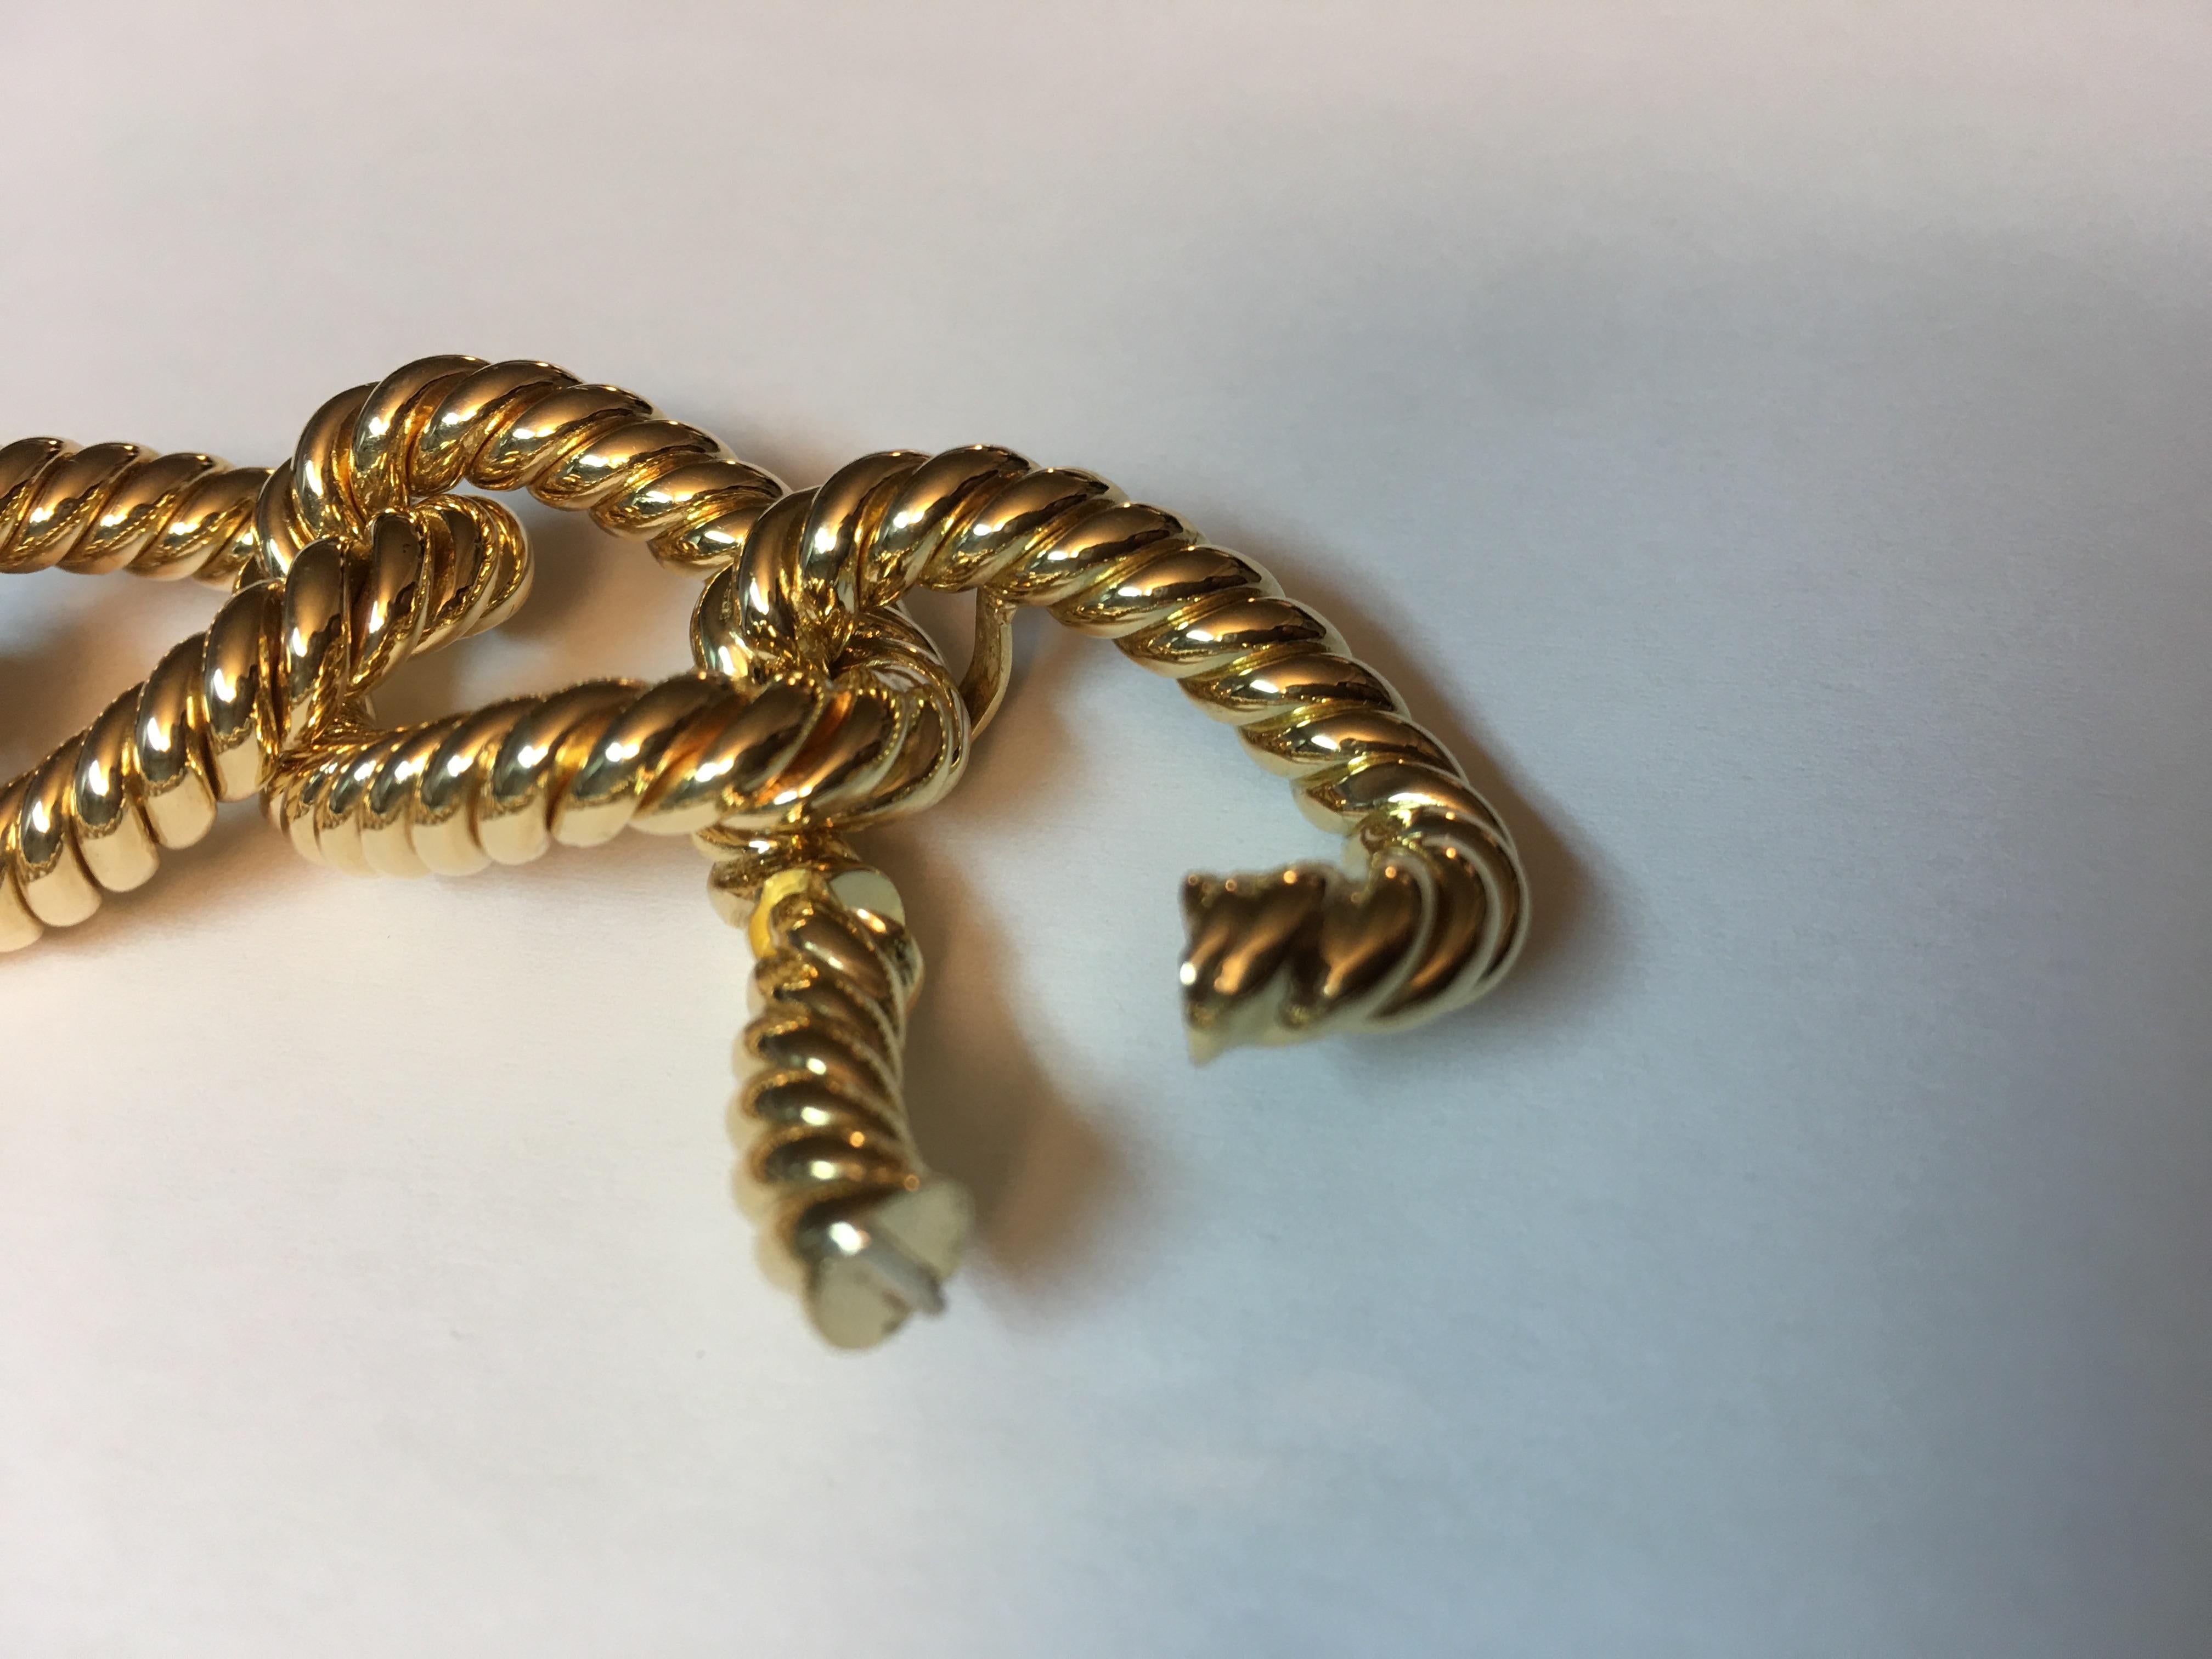 Bracelet à maillons en corde  en 18 kt  or jaune 
Il s'agit d'une pièce traditionnelle  dans la production de Micheletto

le poids total de l'or est de  gr 77.30

TIMBRE : 10 MI ITALIE 750

Le jeu complet est disponible